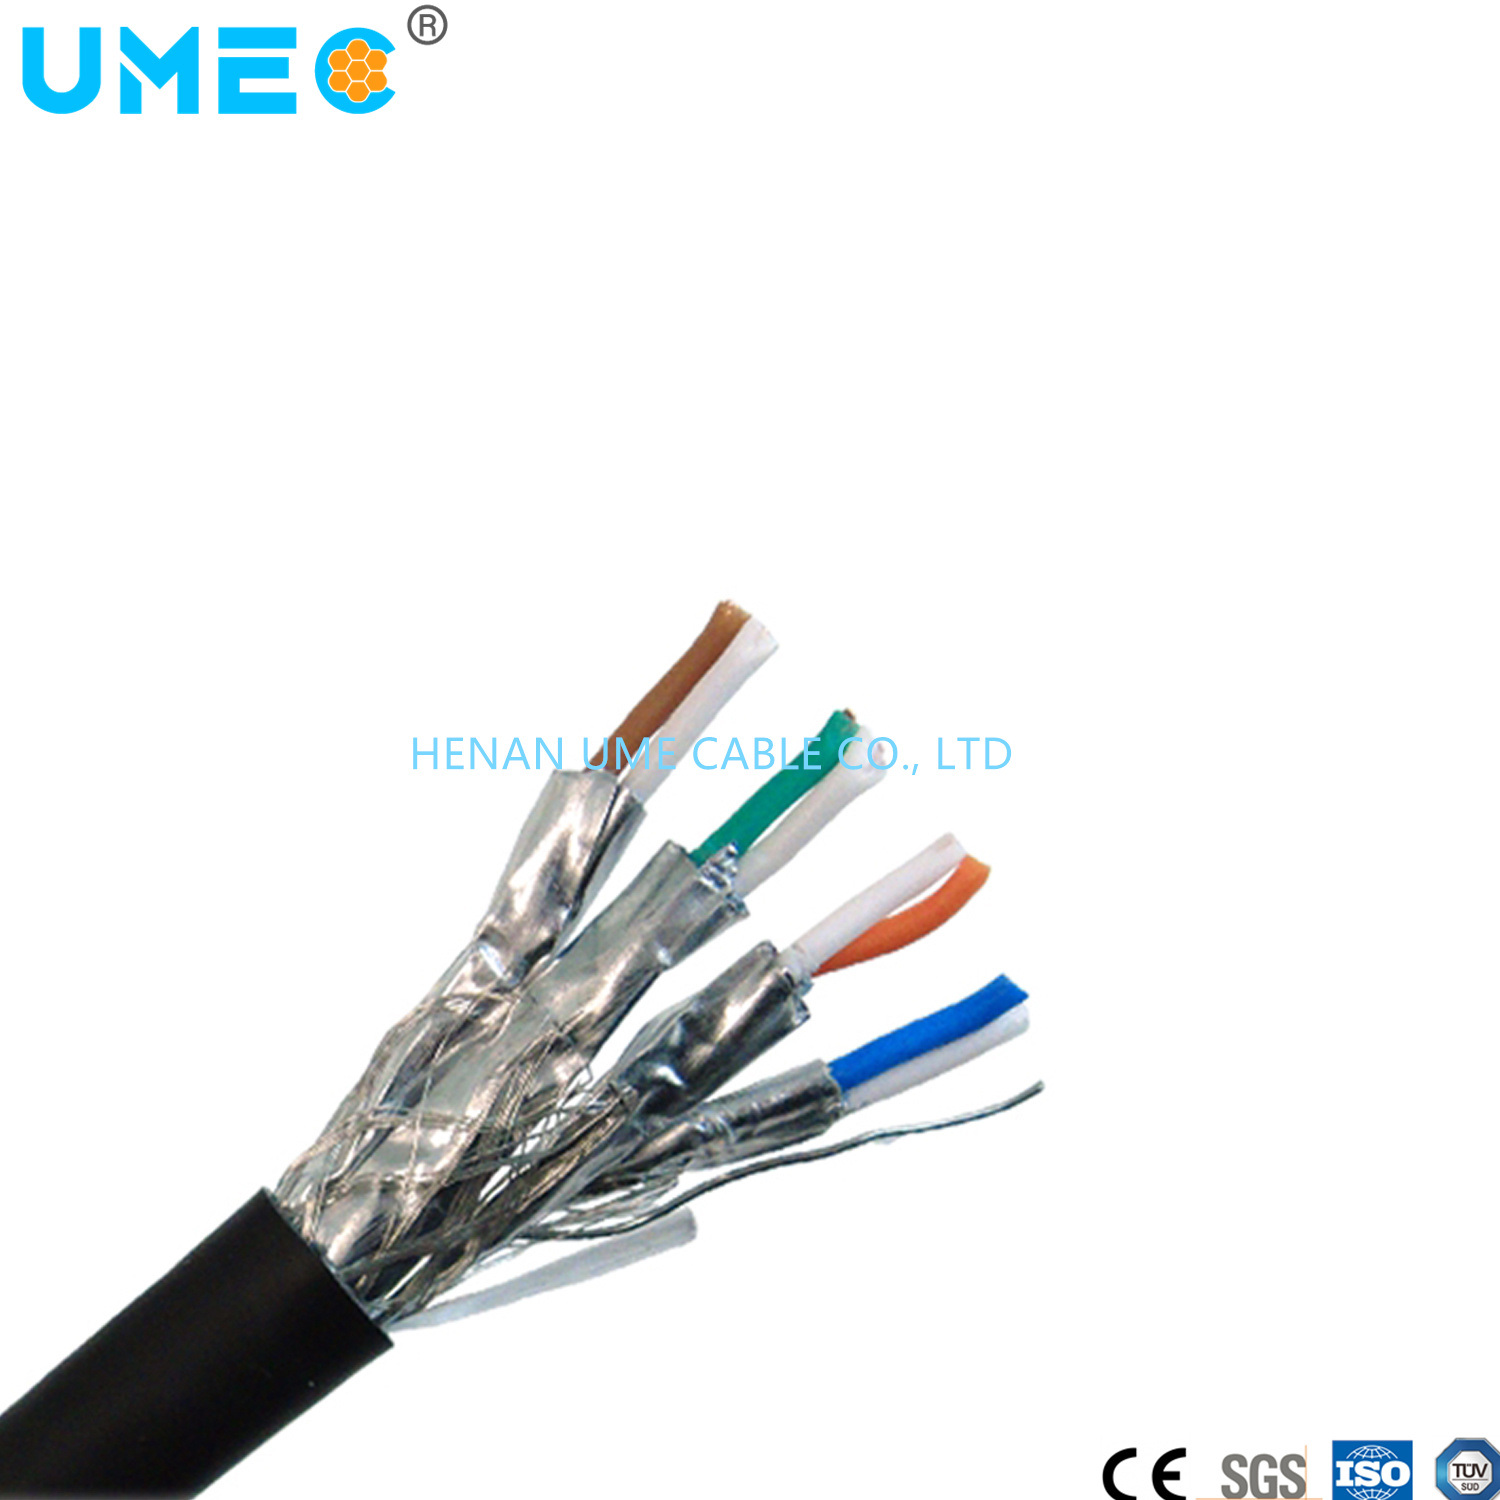 
                La compatibilité électromagnétique EMC et le signal de transmission de données Li2Câble ycy
            